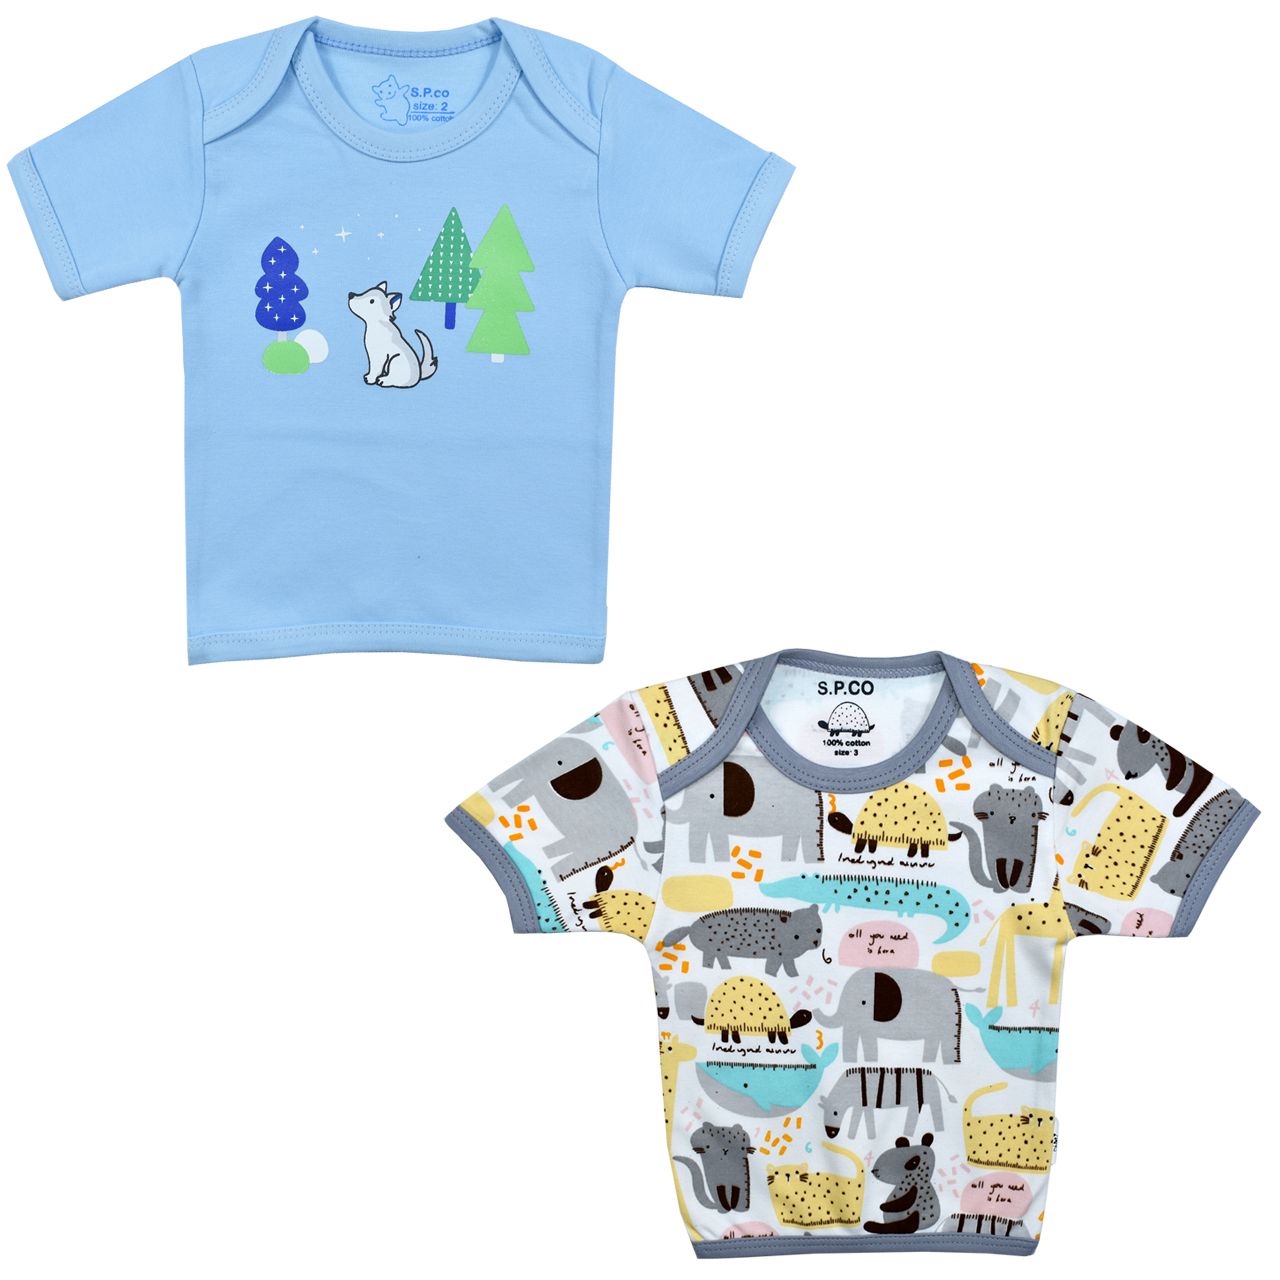 تی شرت آستین کوتاه نوزادی اسپیکو کد 300 -1 بسته دو عددی -  - 1